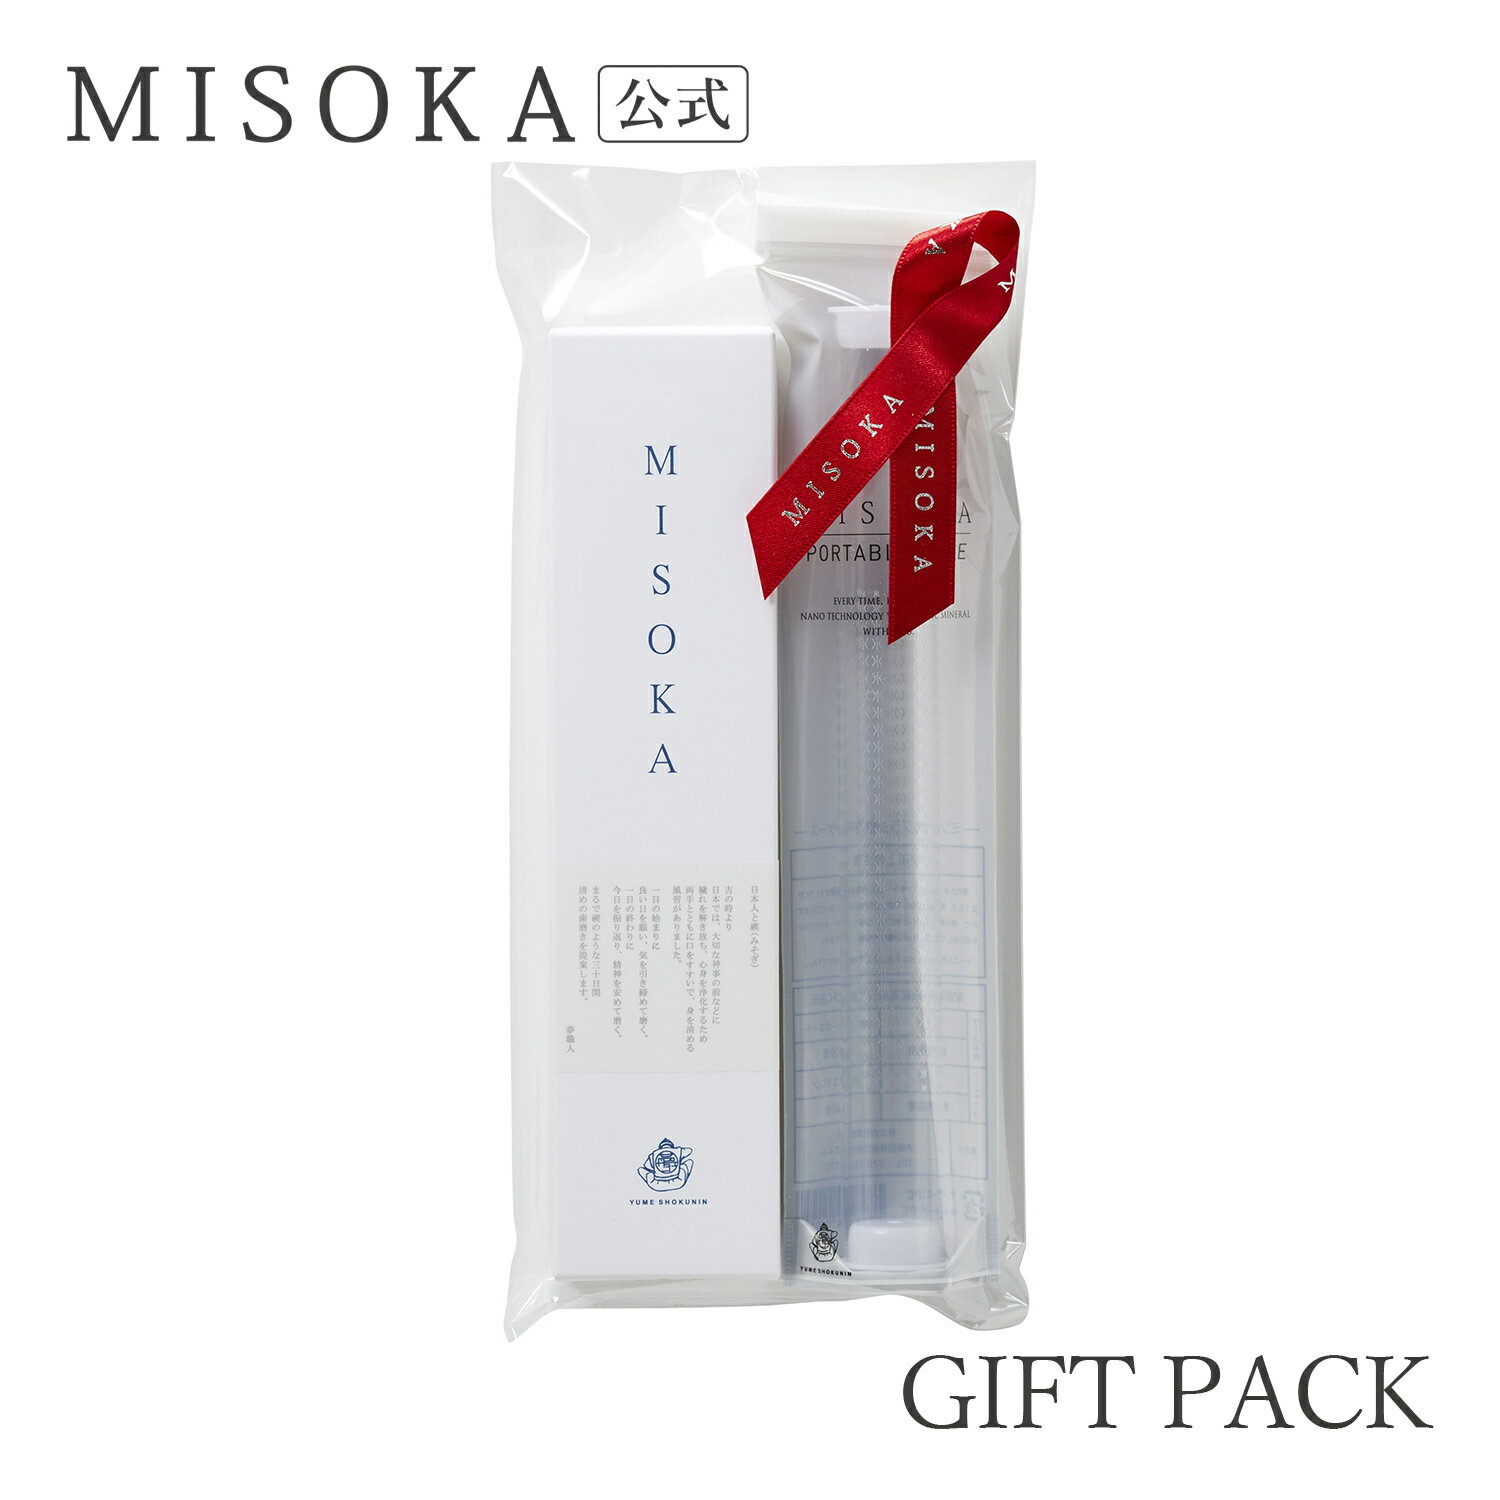  歯ブラシ MISOKA基本の歯ブラシと携帯ケースのセット 1760円  日本製 